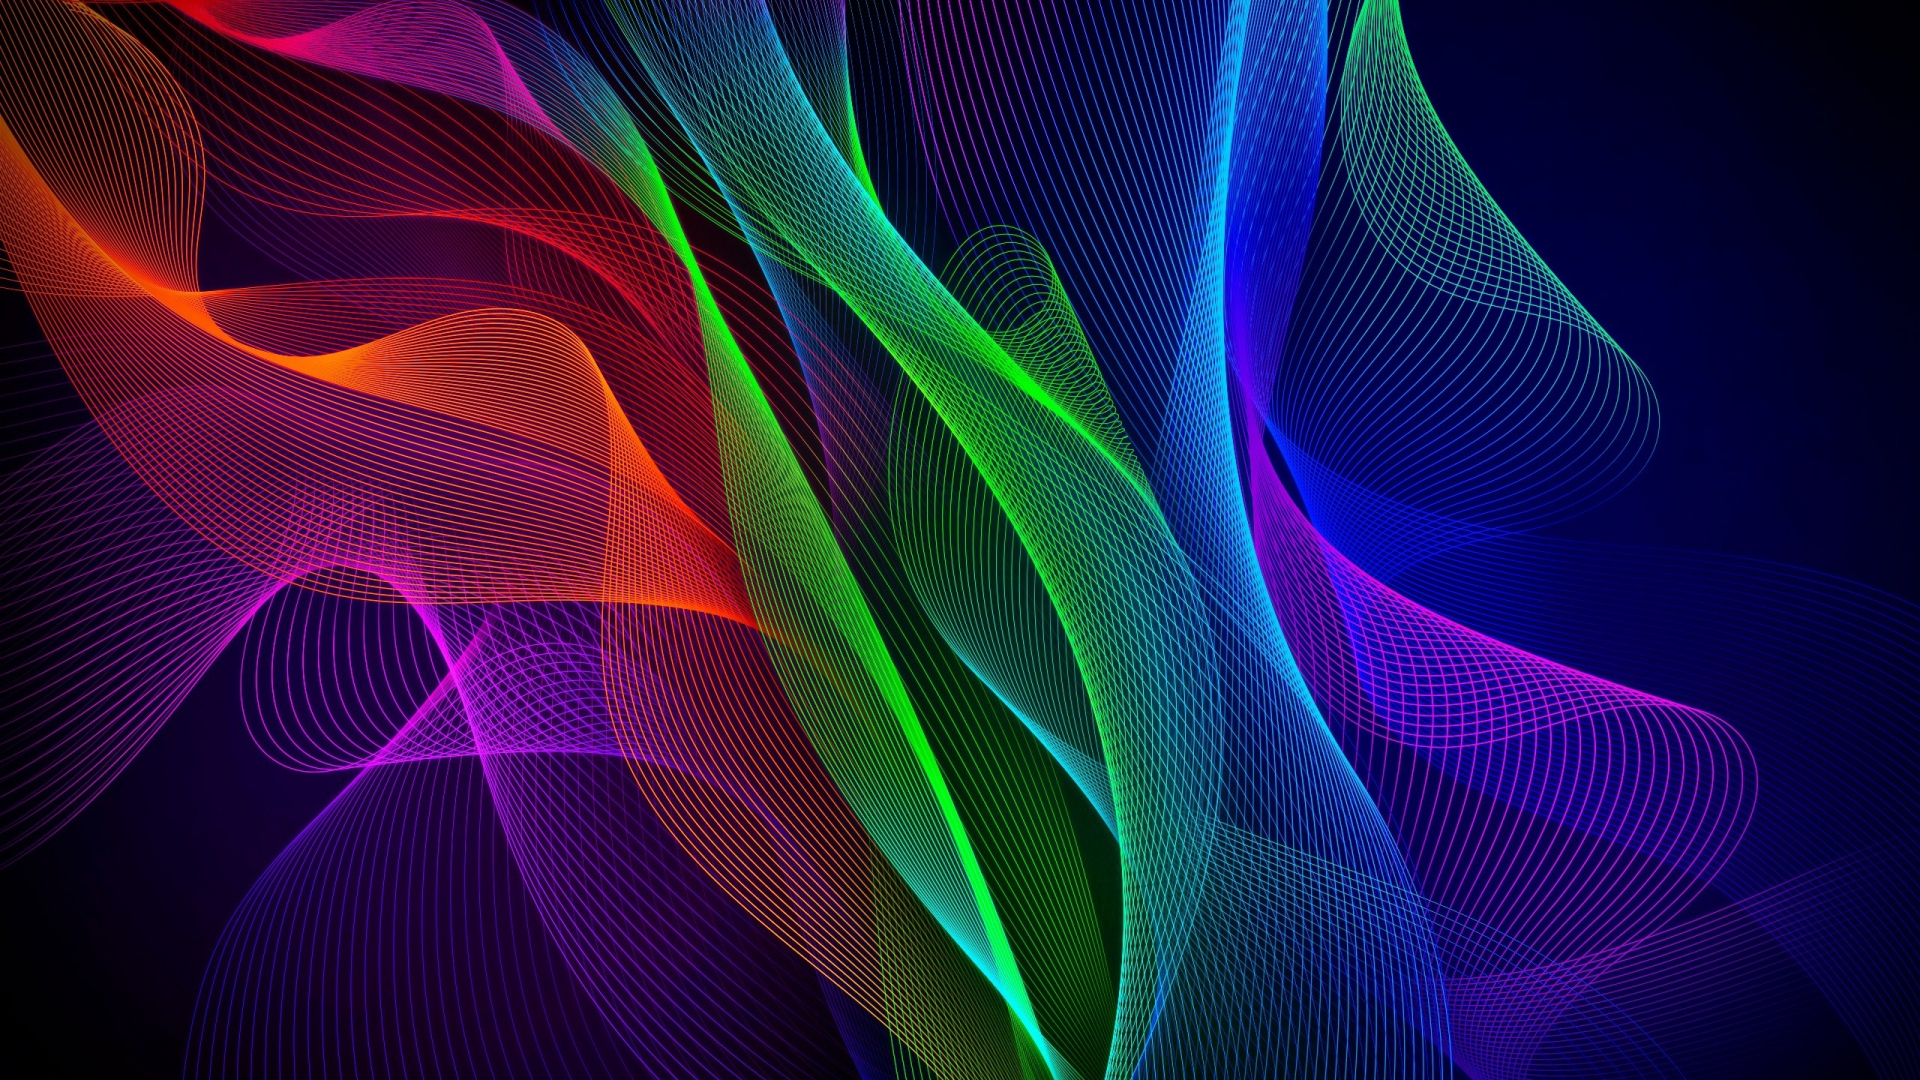 HD wallpaper: Razer, PC gaming, colorful, logo, Razer Inc., abstract, multi  colored | Wallpaper Flare